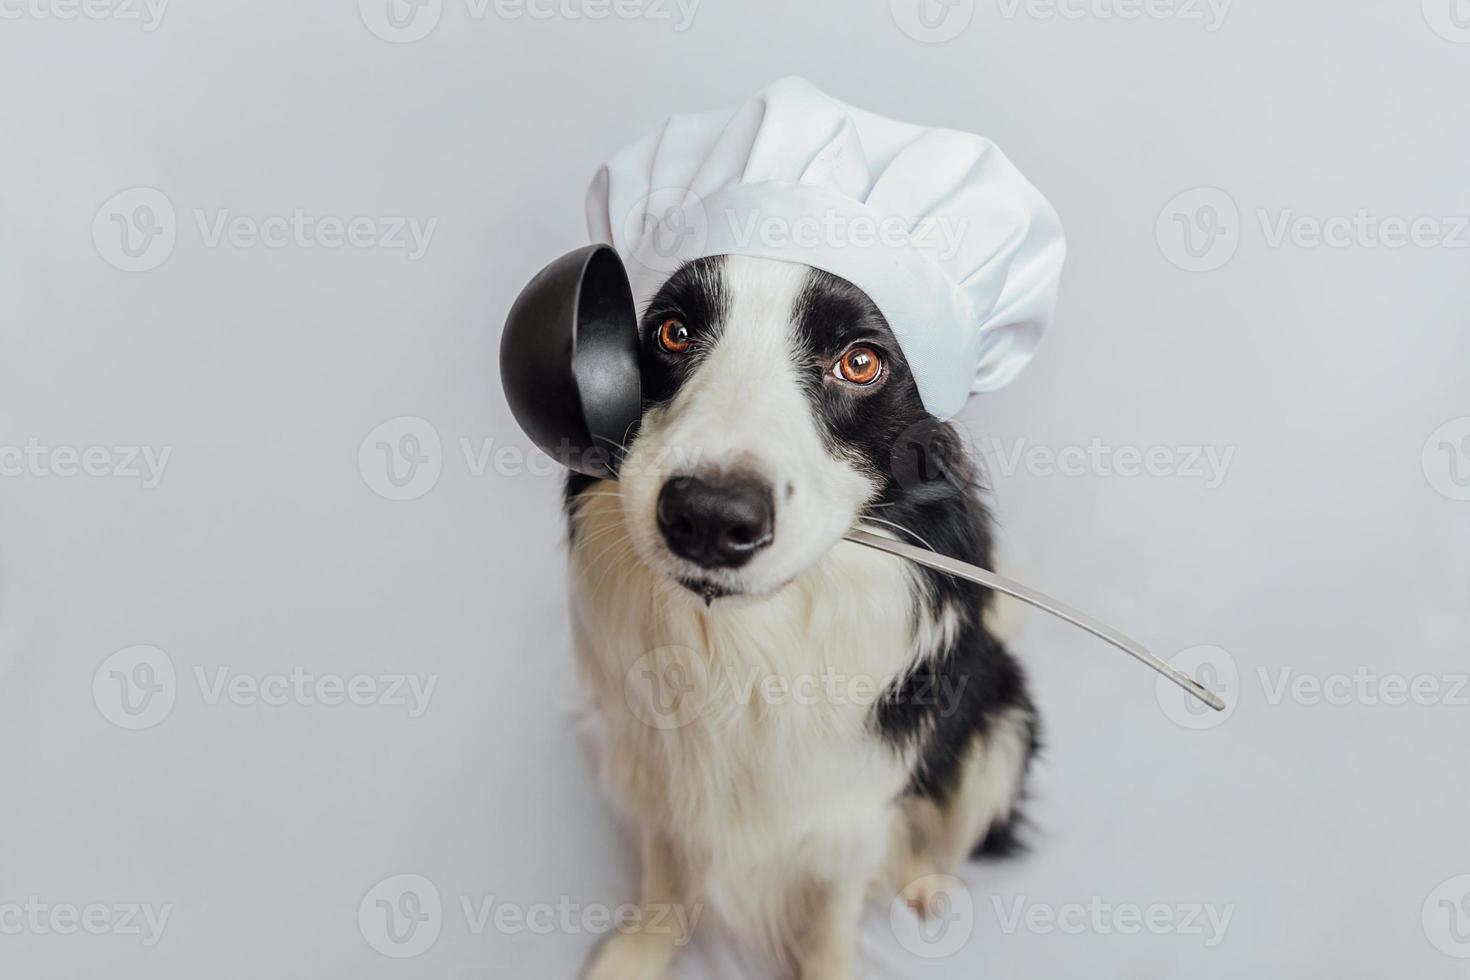 divertente cucciolo di cane border collie in chef che cucina cappello tenendo il cucchiaio da cucina mestolo in bocca isolato su sfondo bianco. chef cane che cucina la cena. concetto di menu del ristorante di cibo fatto in casa. processo di cottura. foto